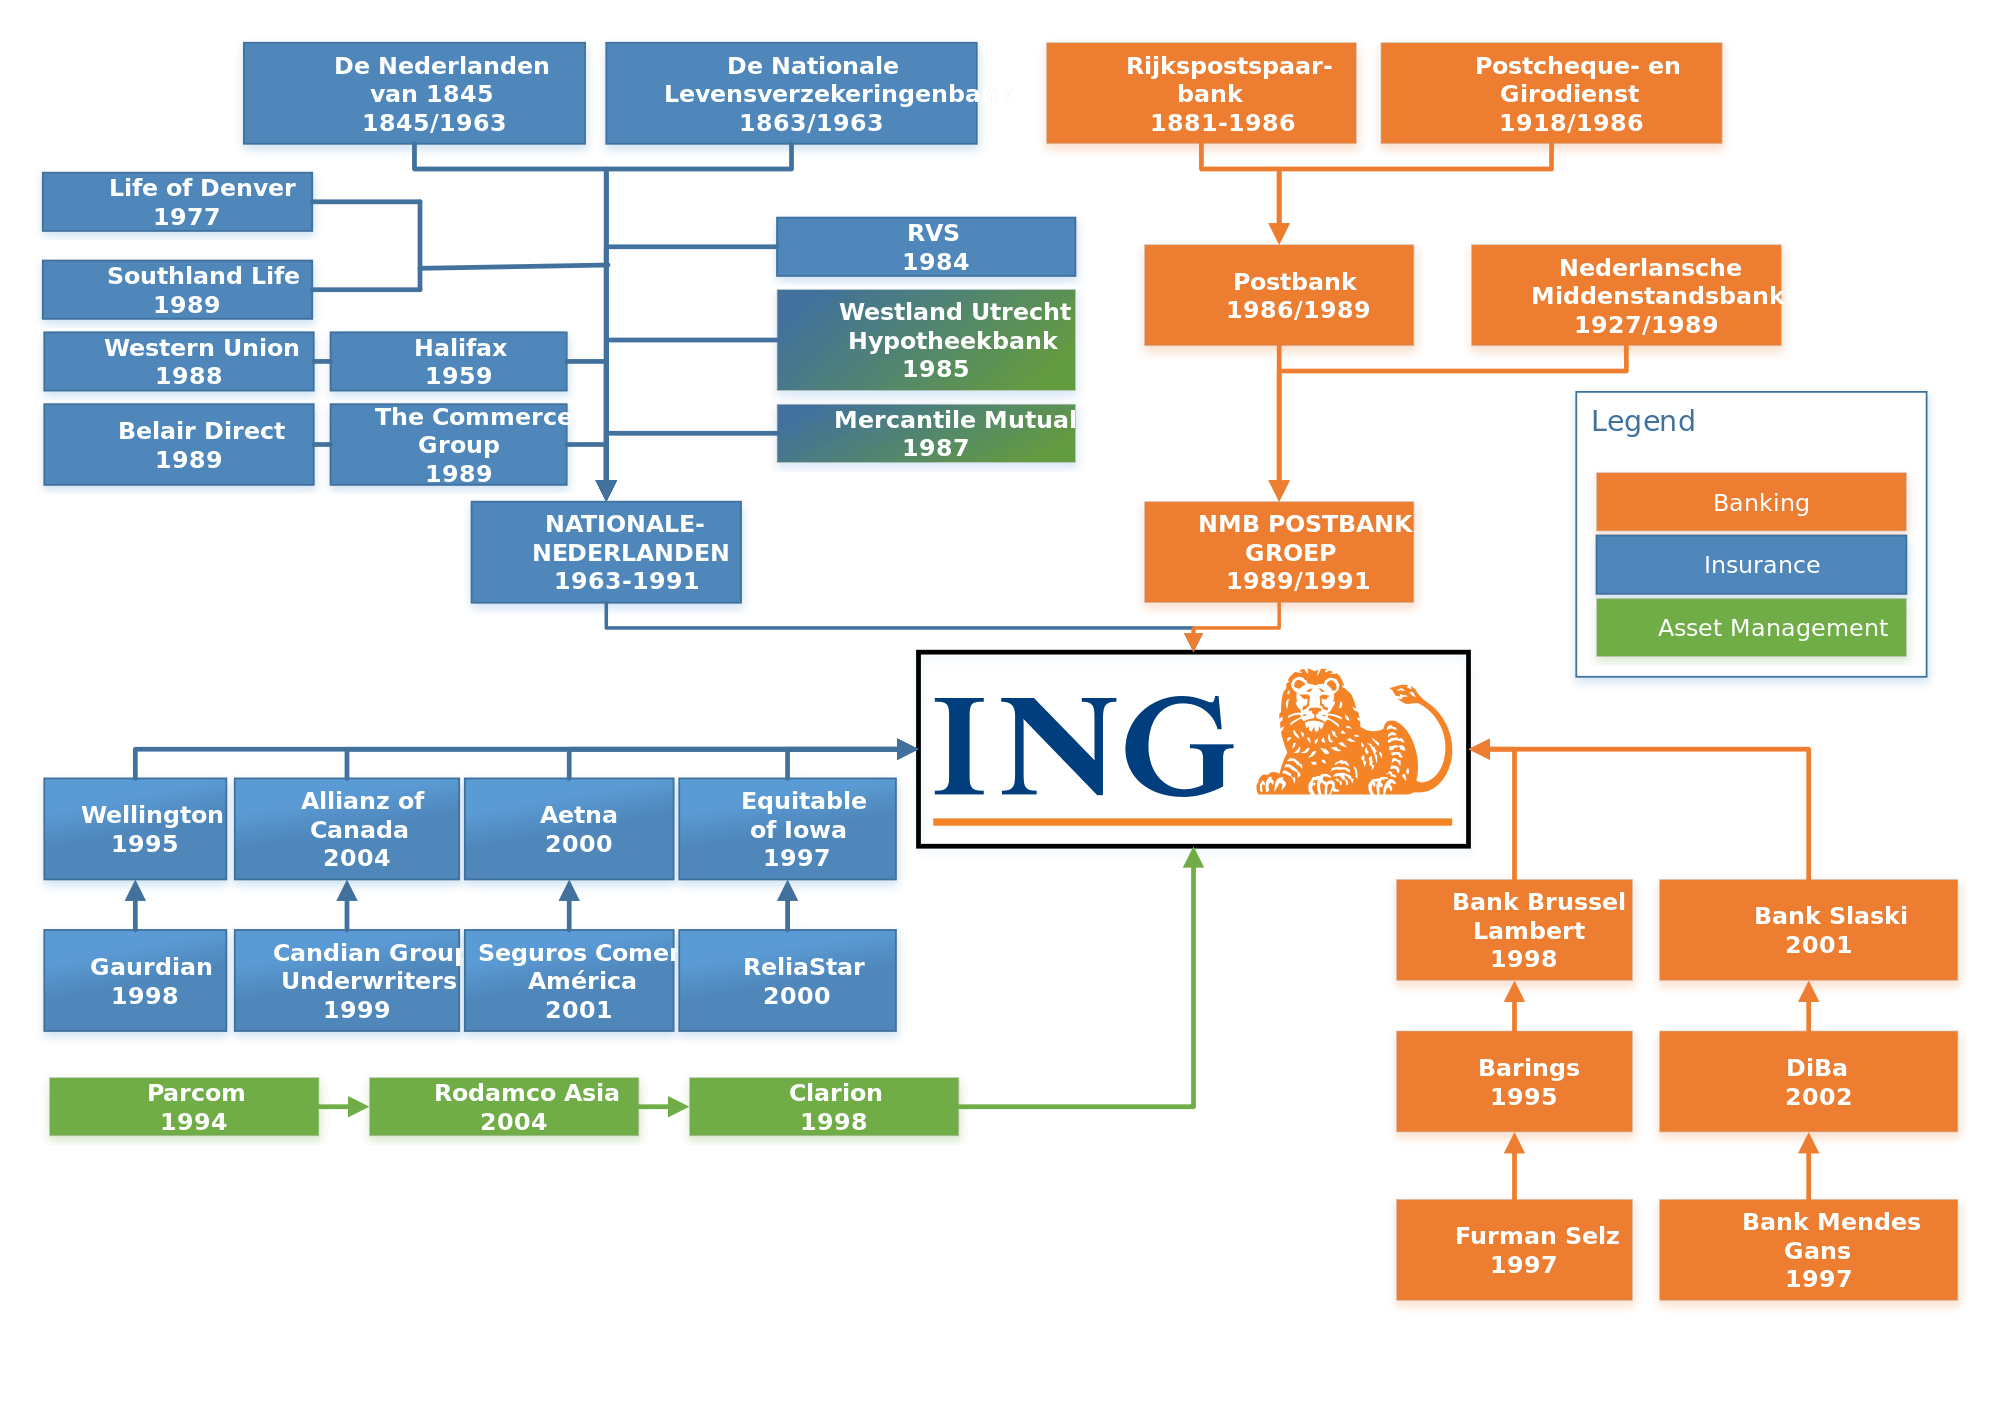 ING Lion Logo - ING Group